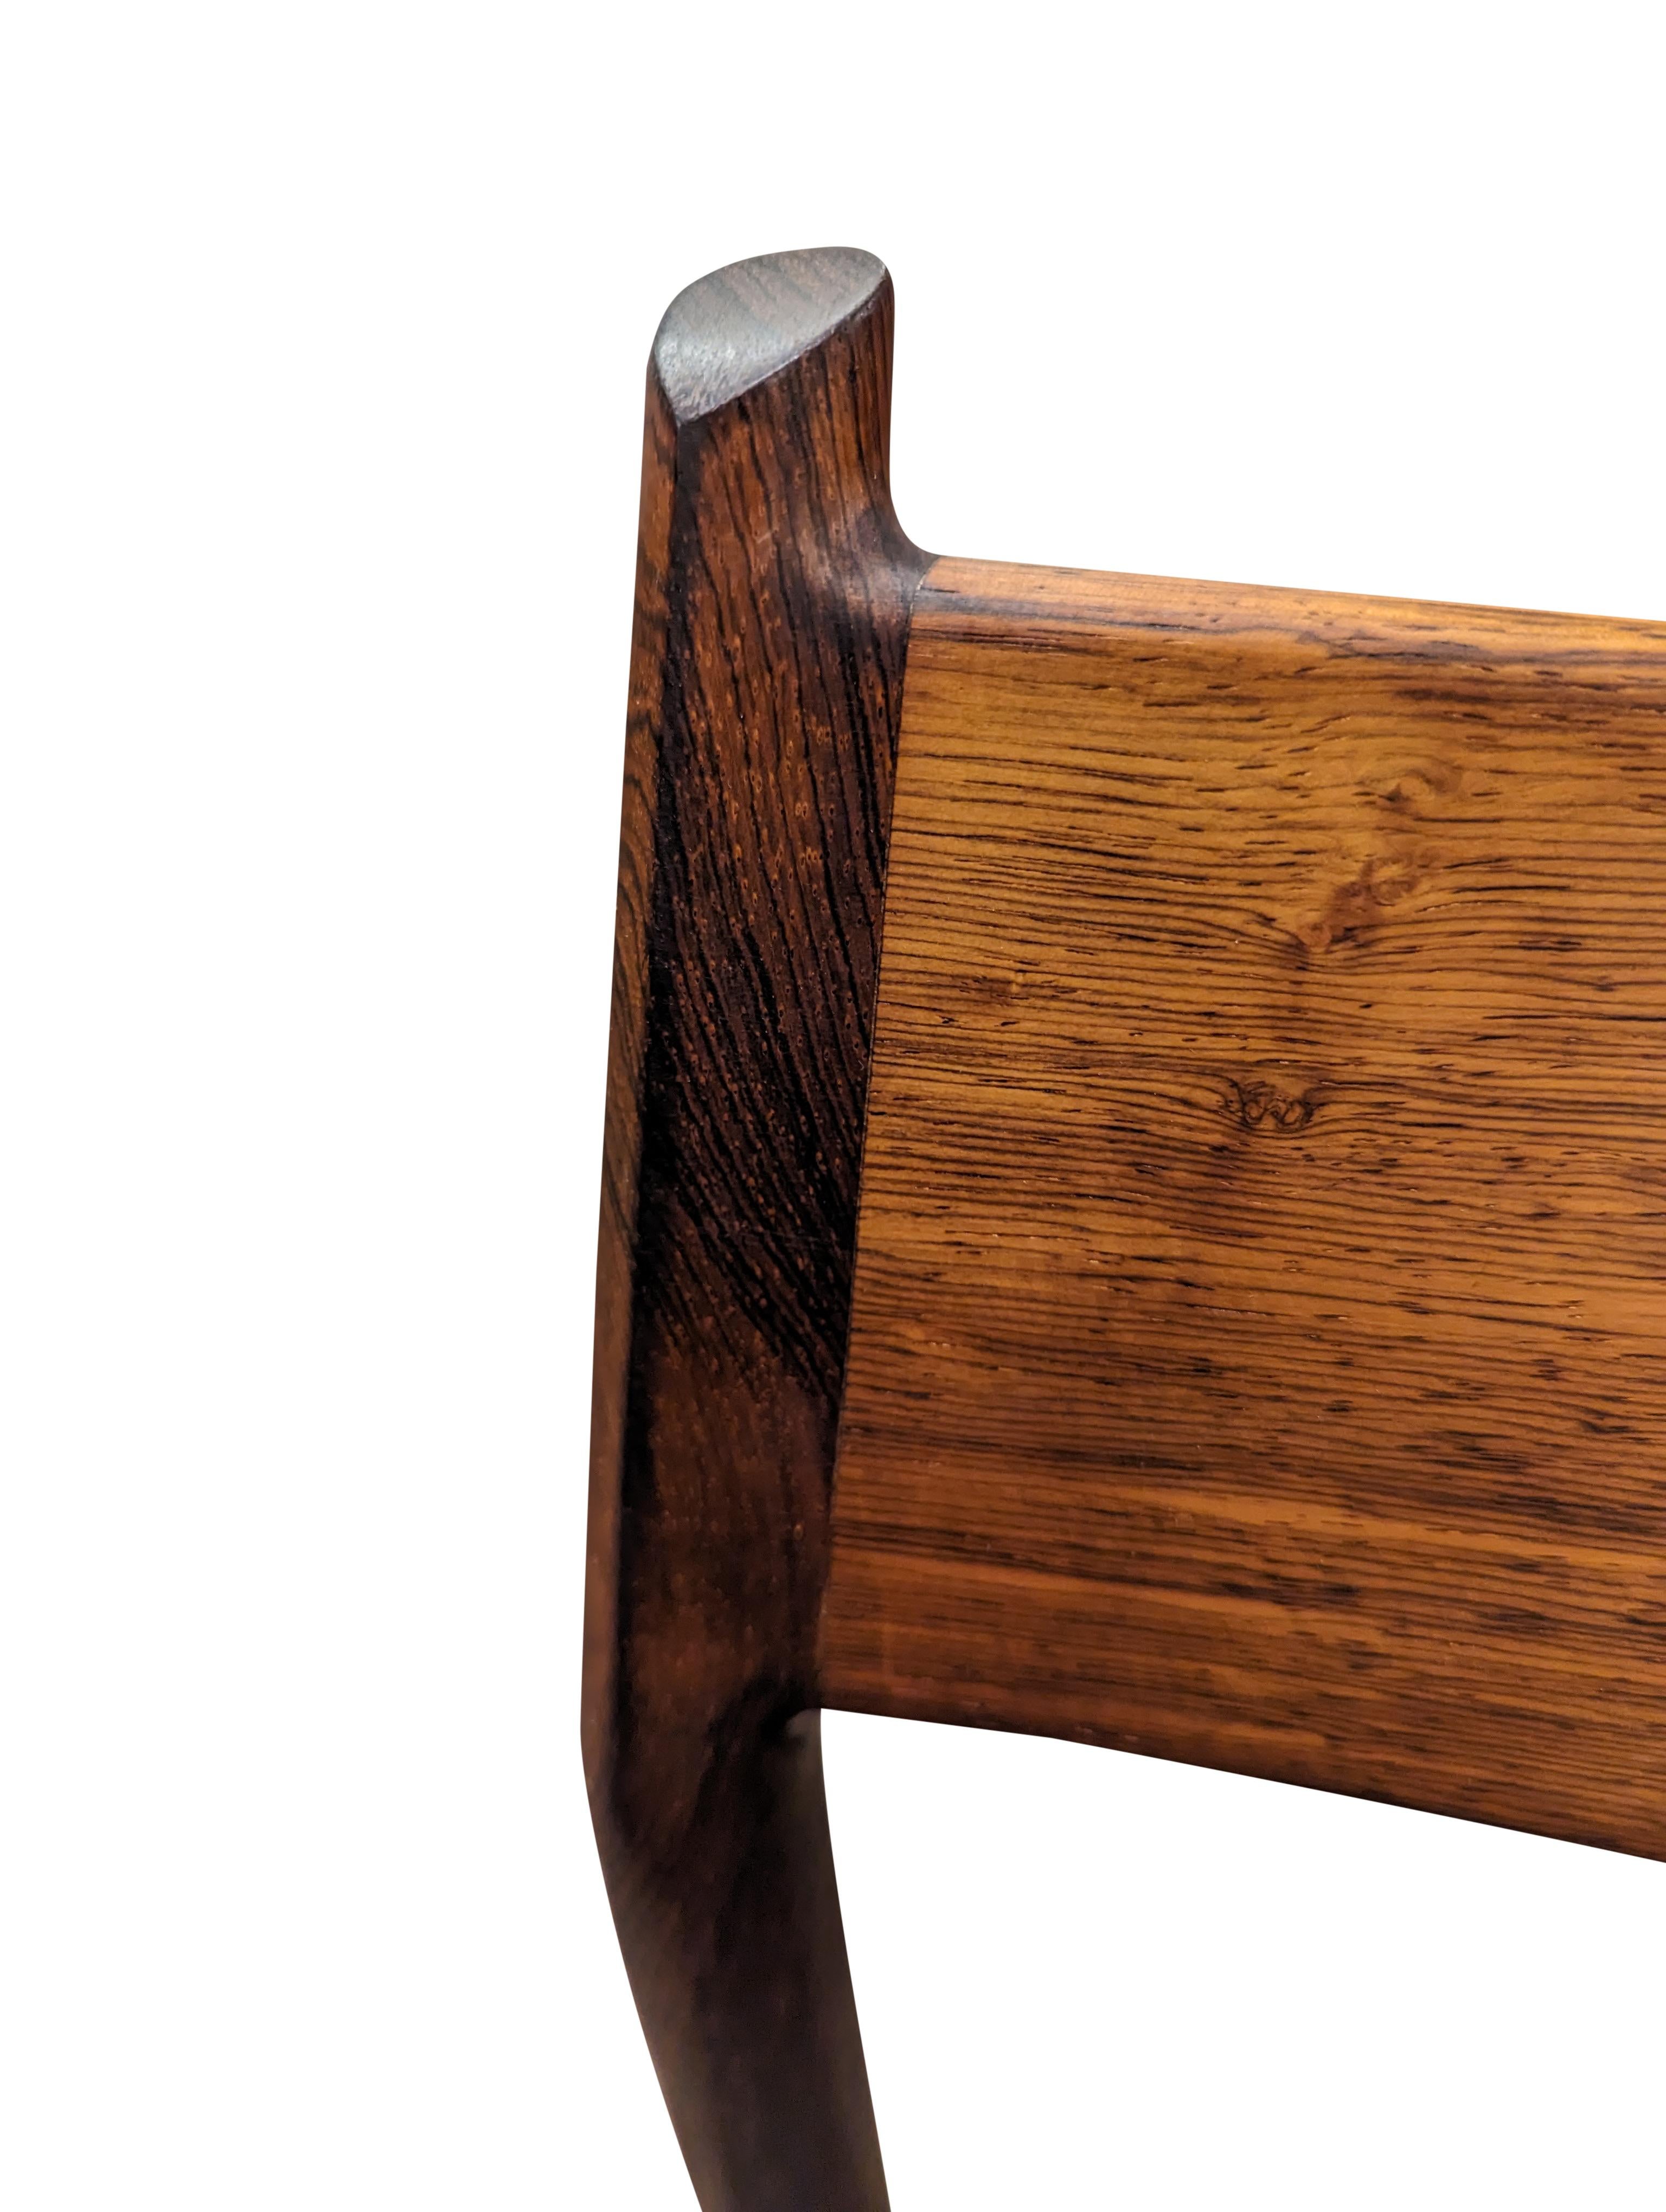 Vintage Danish Arne Vodder for Sibast Mobler Rosewood Dining Chair - 082316 For Sale 4